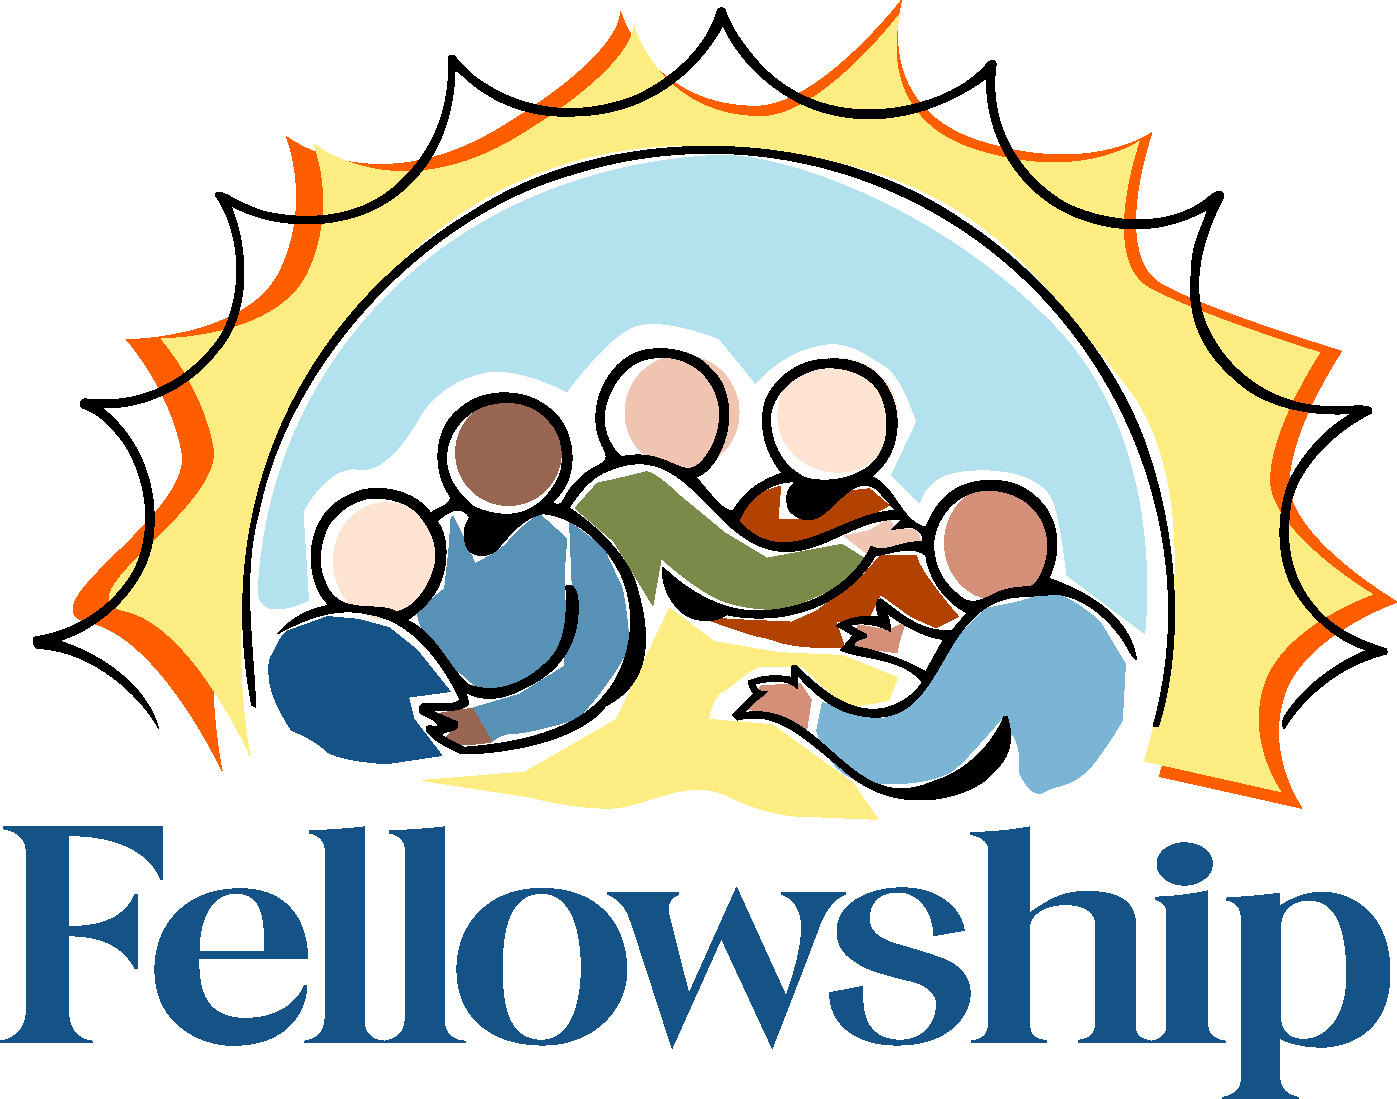 Church fellowship clip art